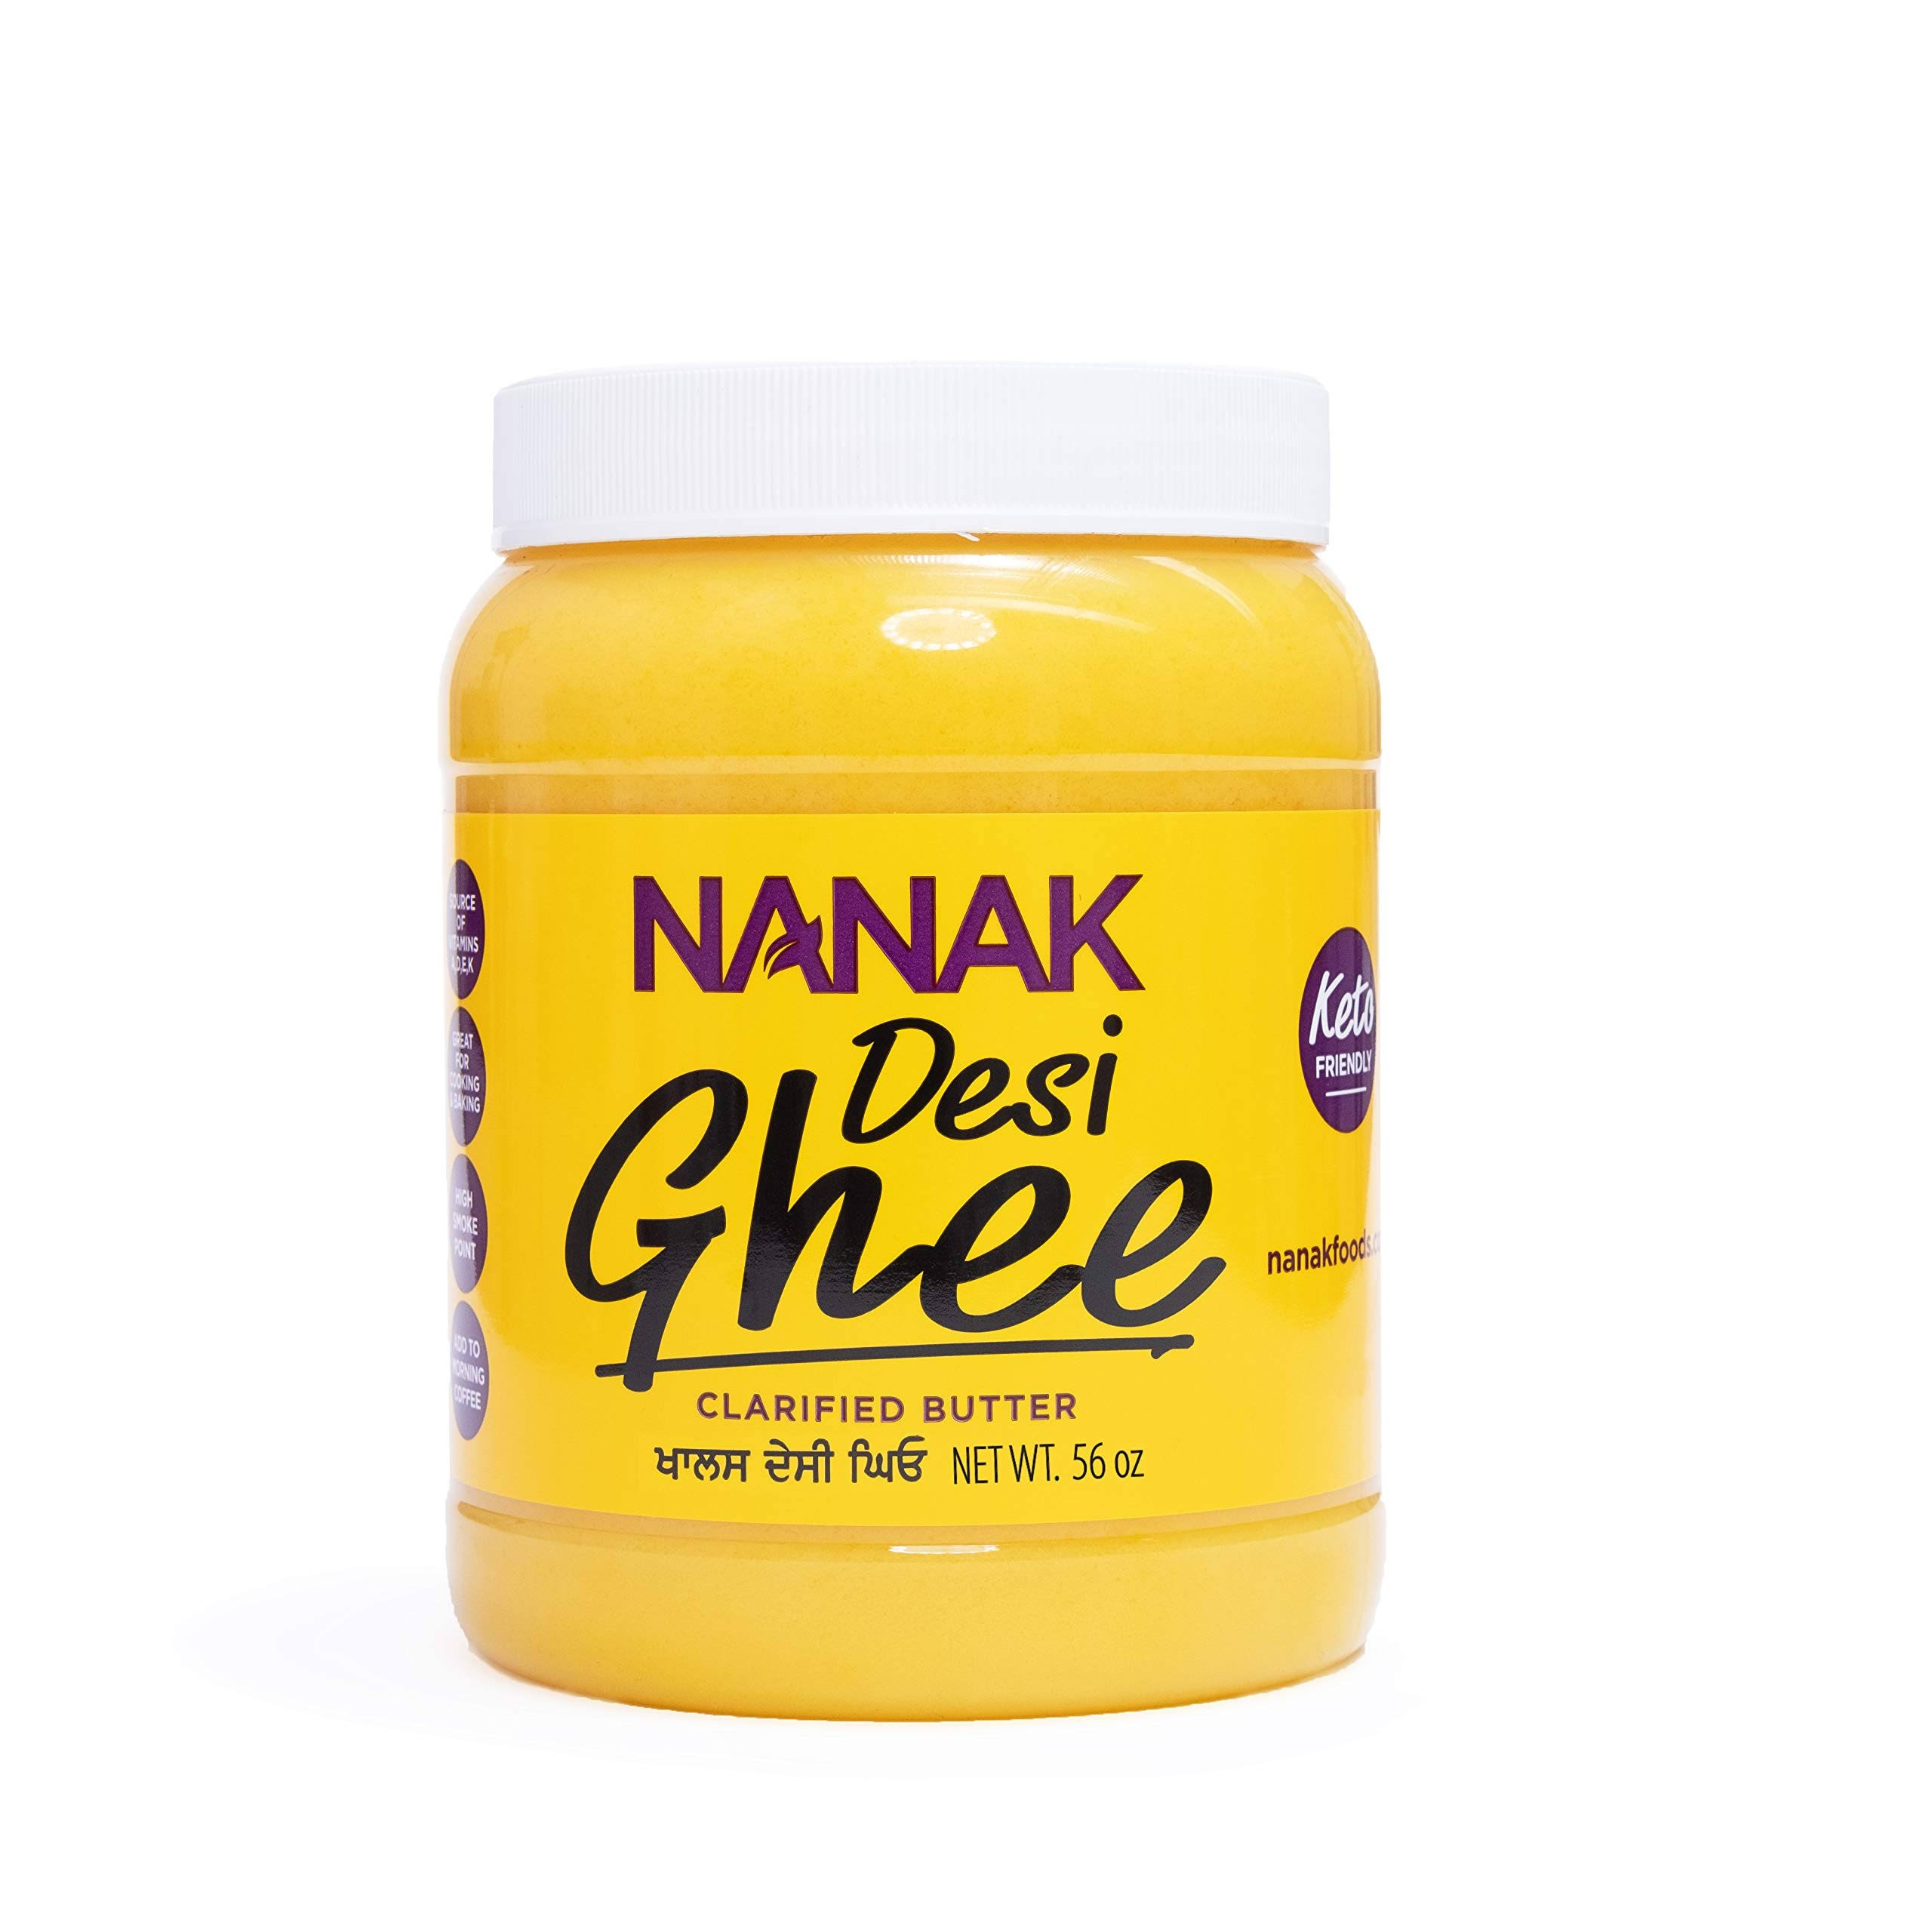 Nanak Pure Desi Ghee Clarified Butter